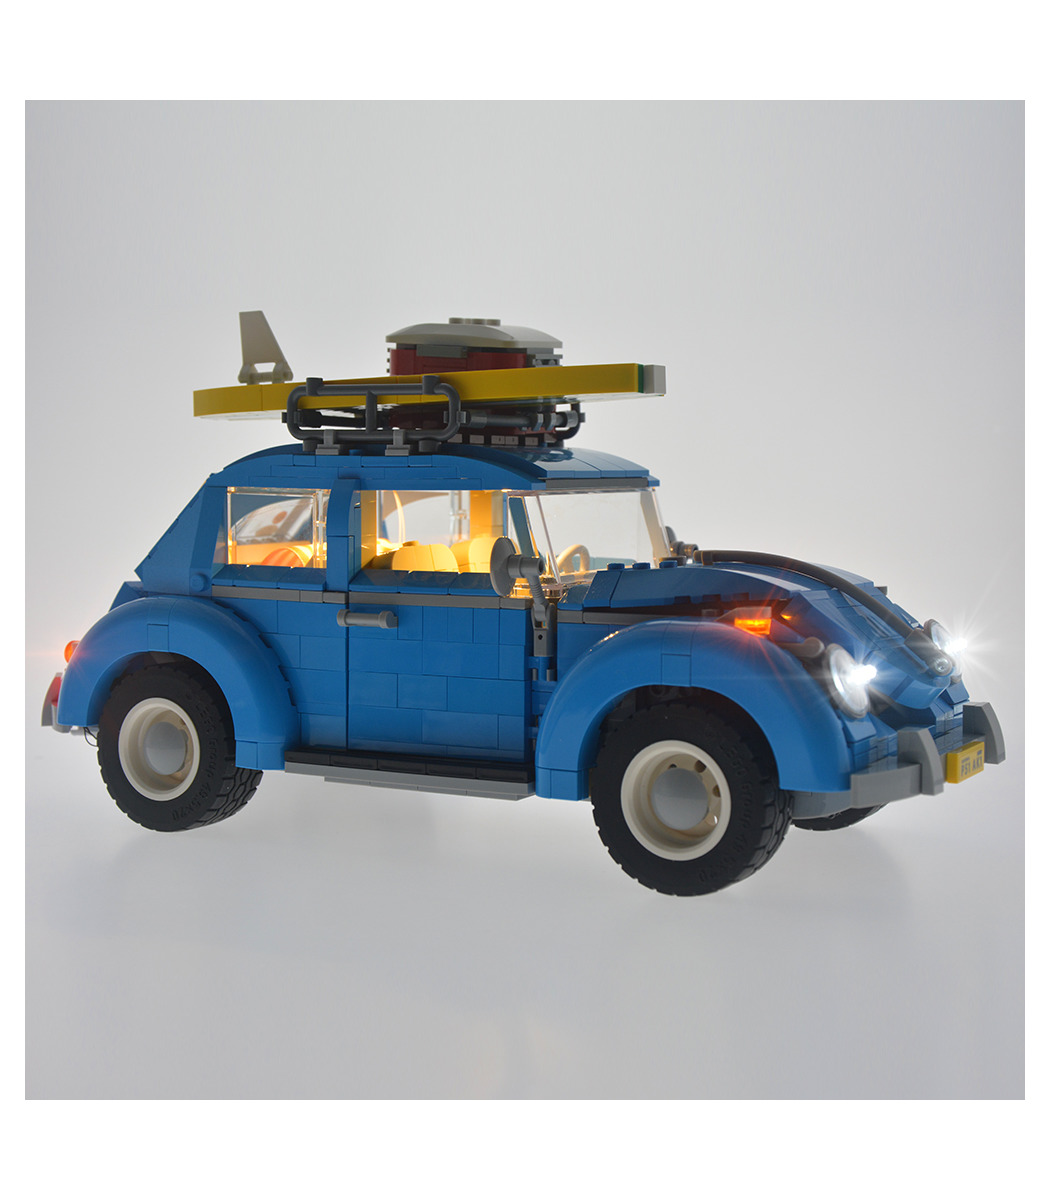 Kit de luz iluminación LED sólo para Lego 10252 Volkswagen Escarabajo Coche Modelo ladrillos 